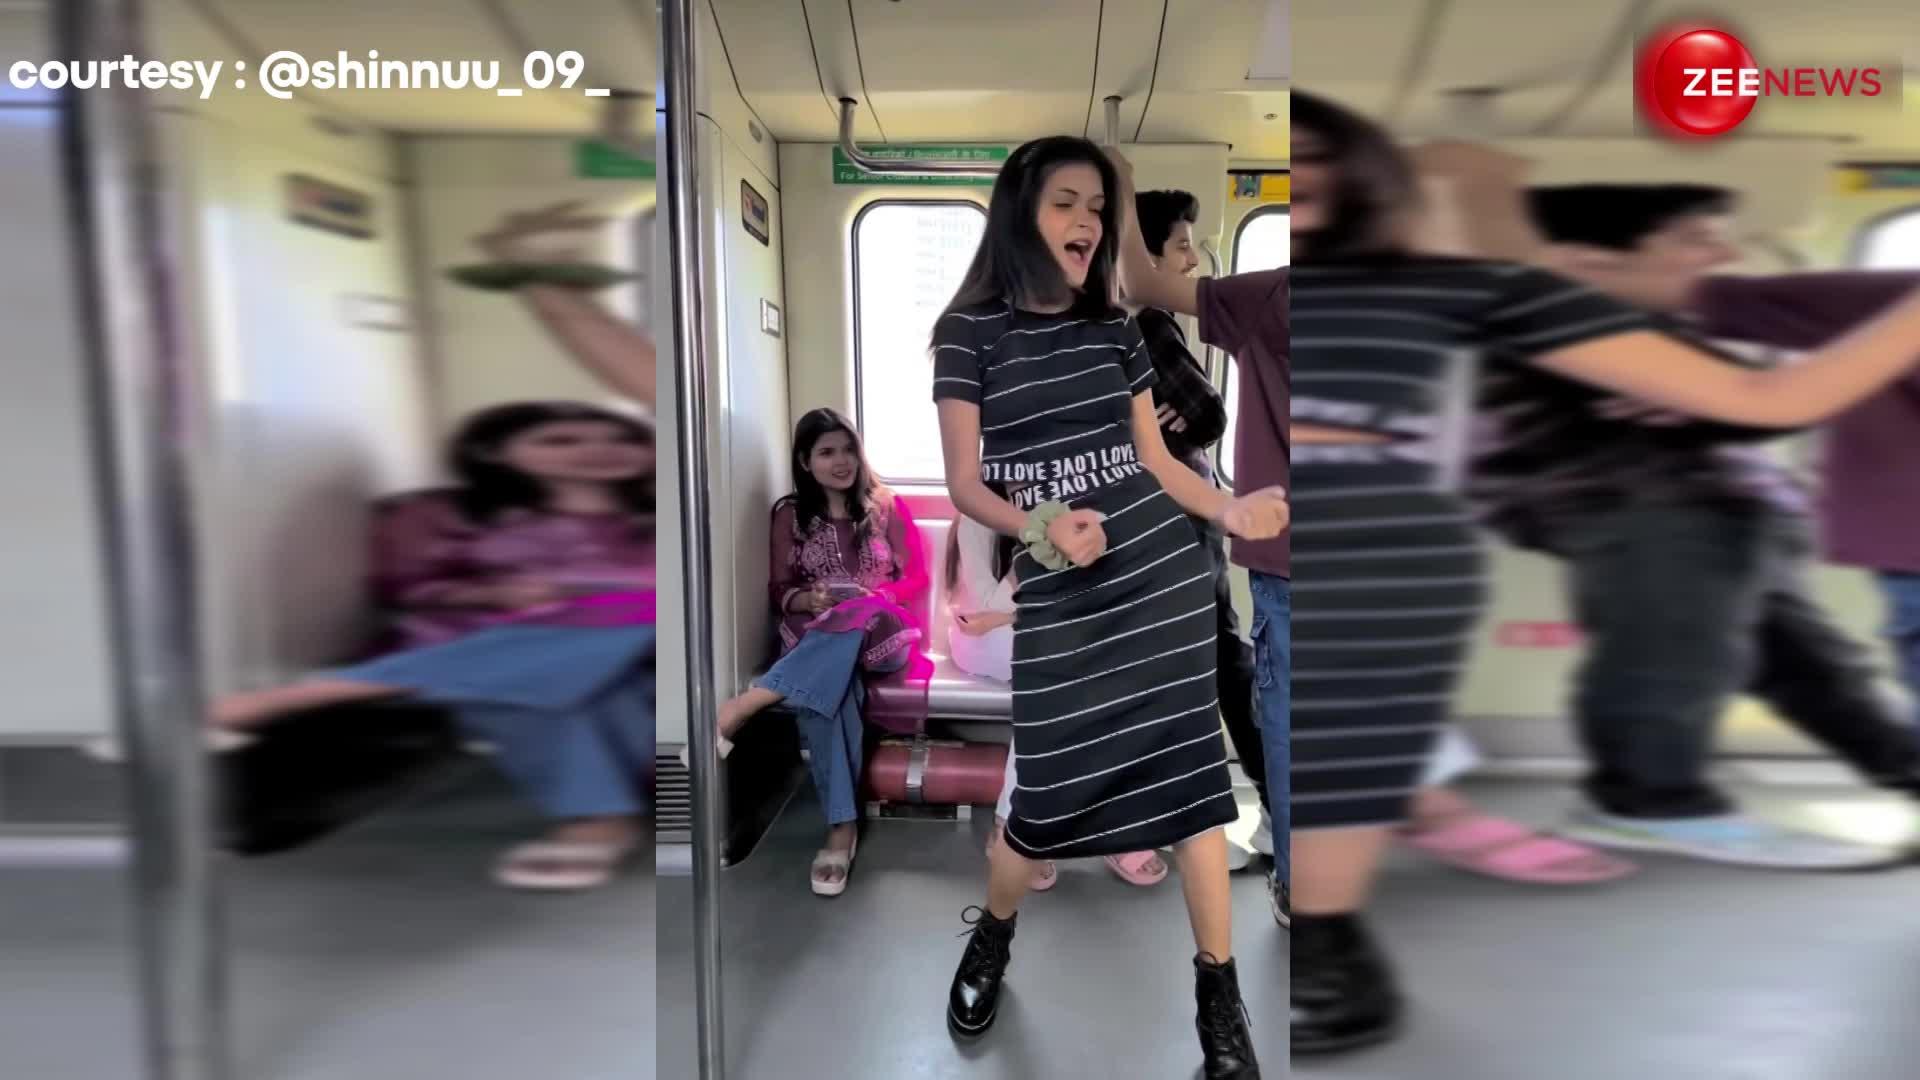 Delhi metro में लड़की ने उड़ा दिया गर्दा, भोजपुरी गाने पर लगाए जबरदस्त ठुमके, VIDEO देख उड़ गए पब्लिक के होश